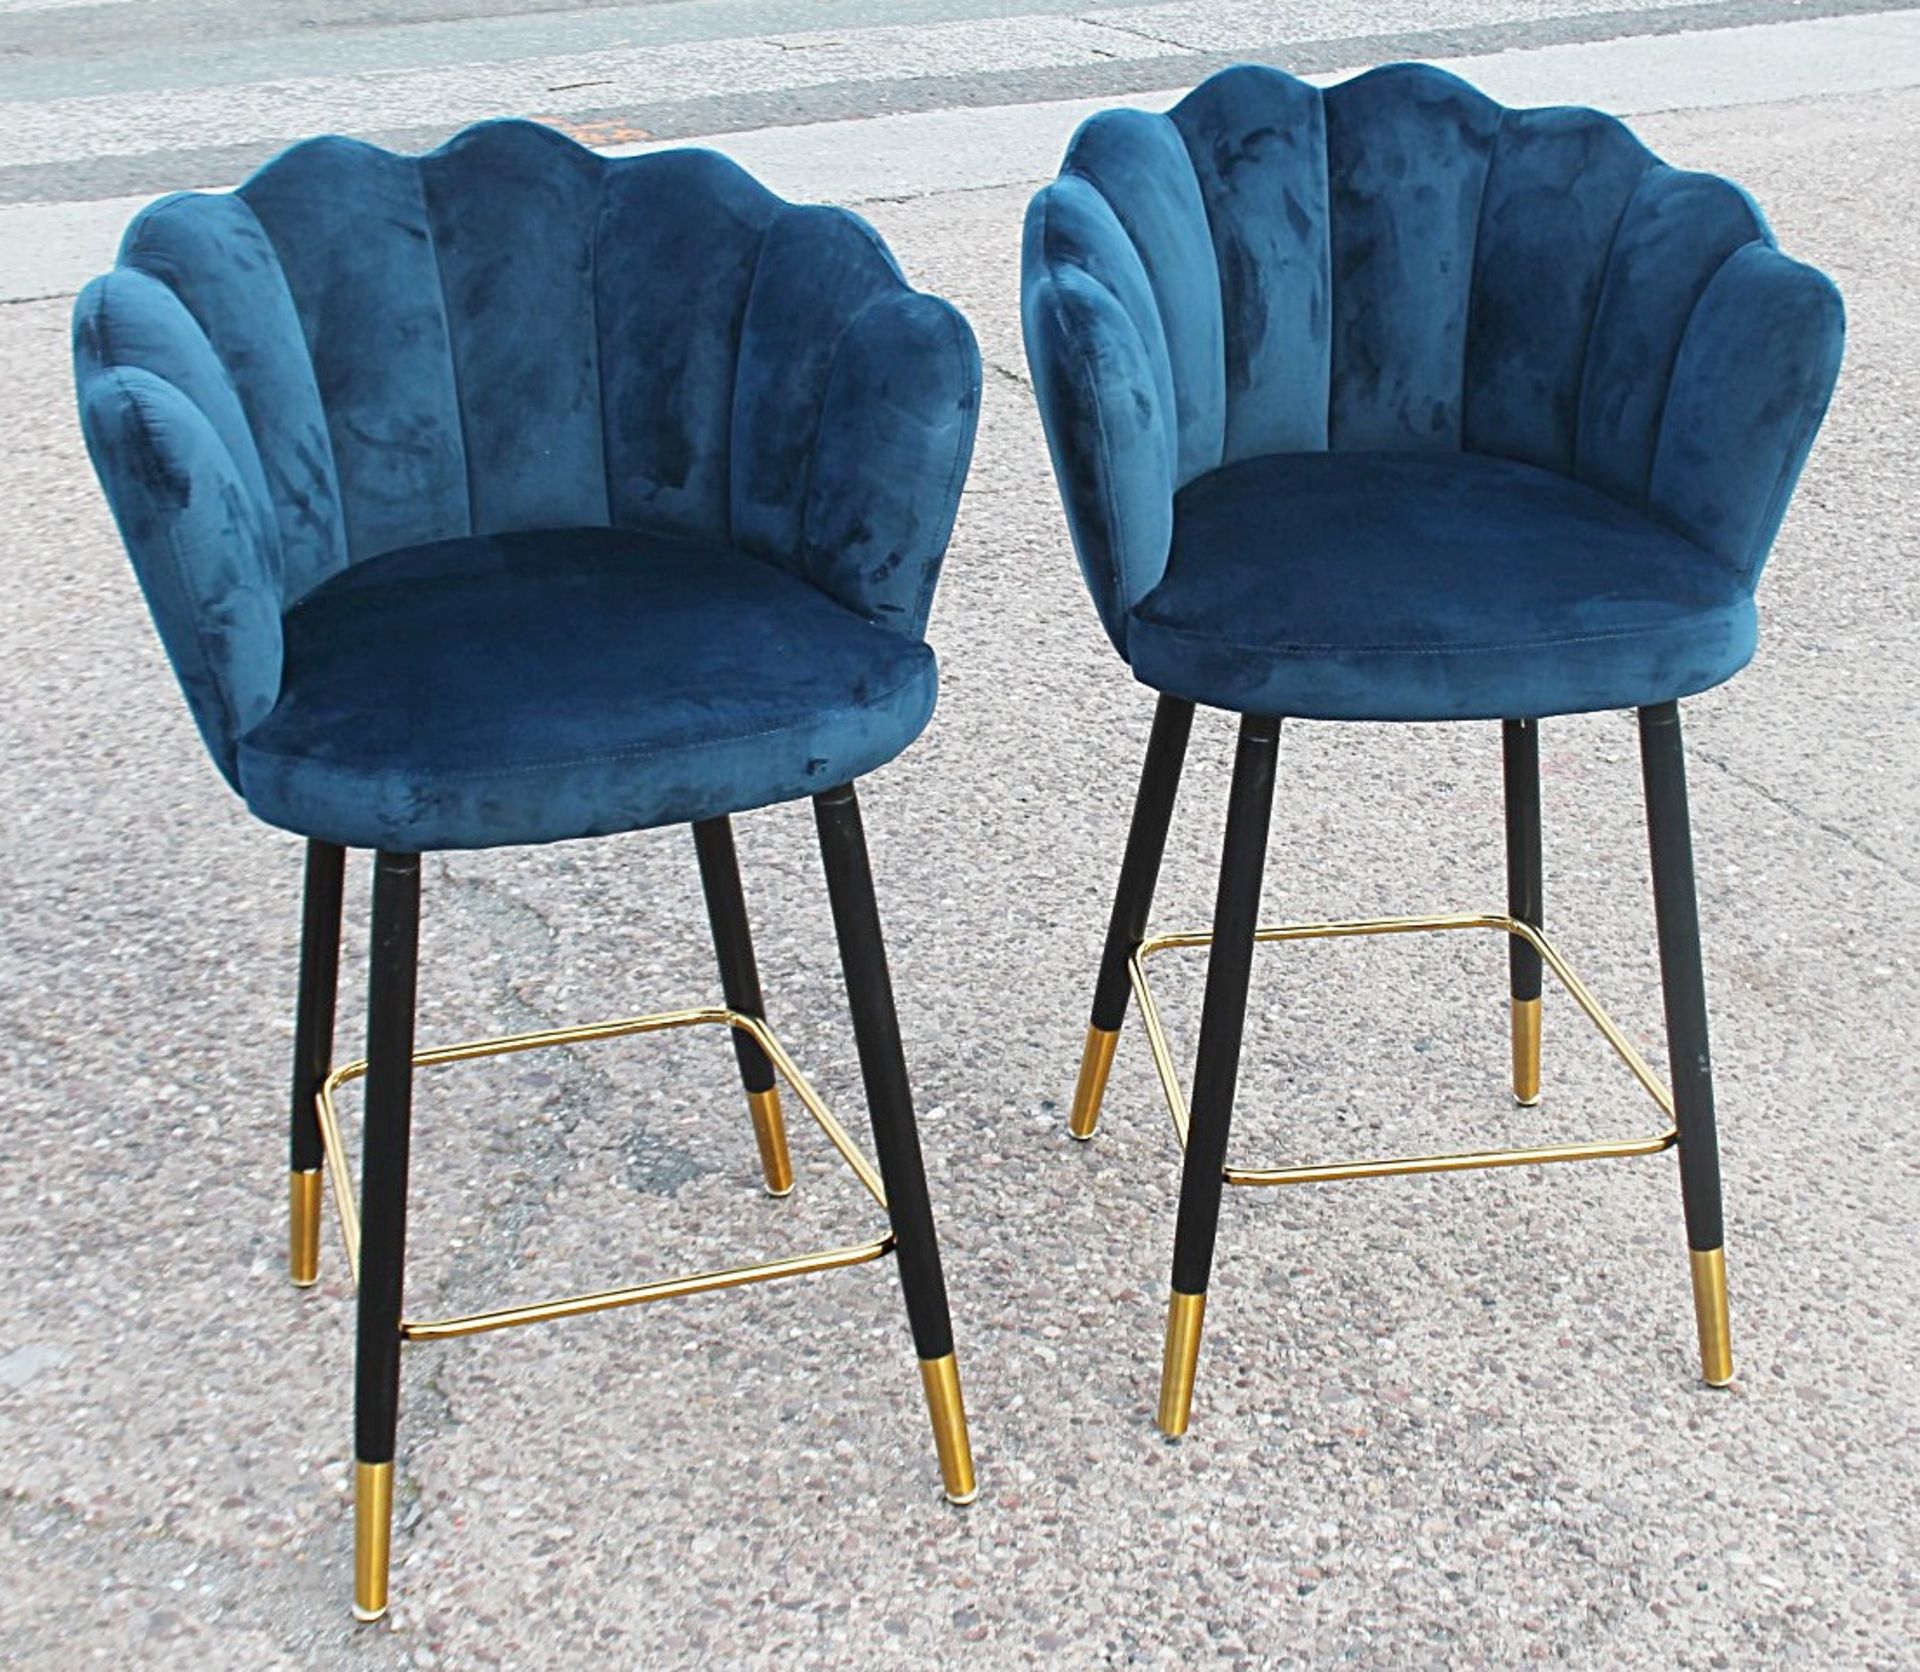 6 x Art Deco-Inspired Velvet Upholstered Scalloped-Back Bar Stools In Dark Blue - Recently Removed